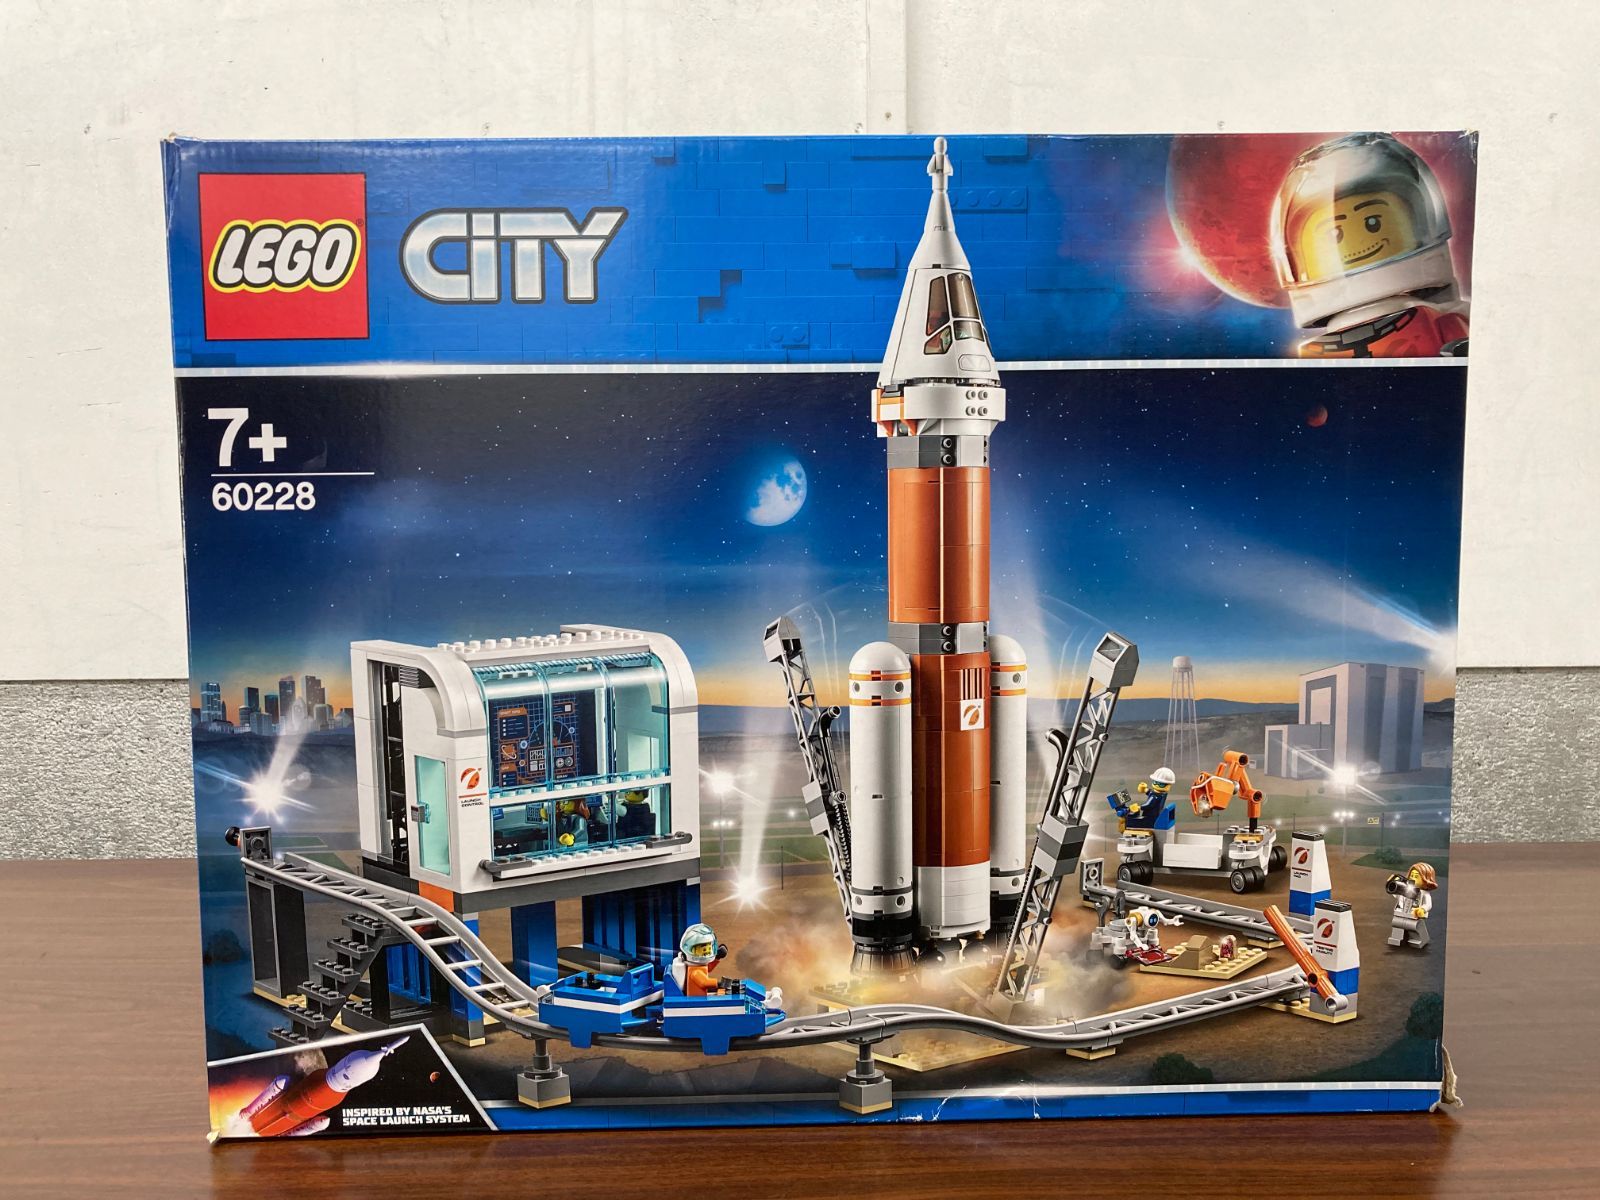 レゴ(LEGO) シティ レゴシティ LEGOCITY 超巨大ロケットと指令本部